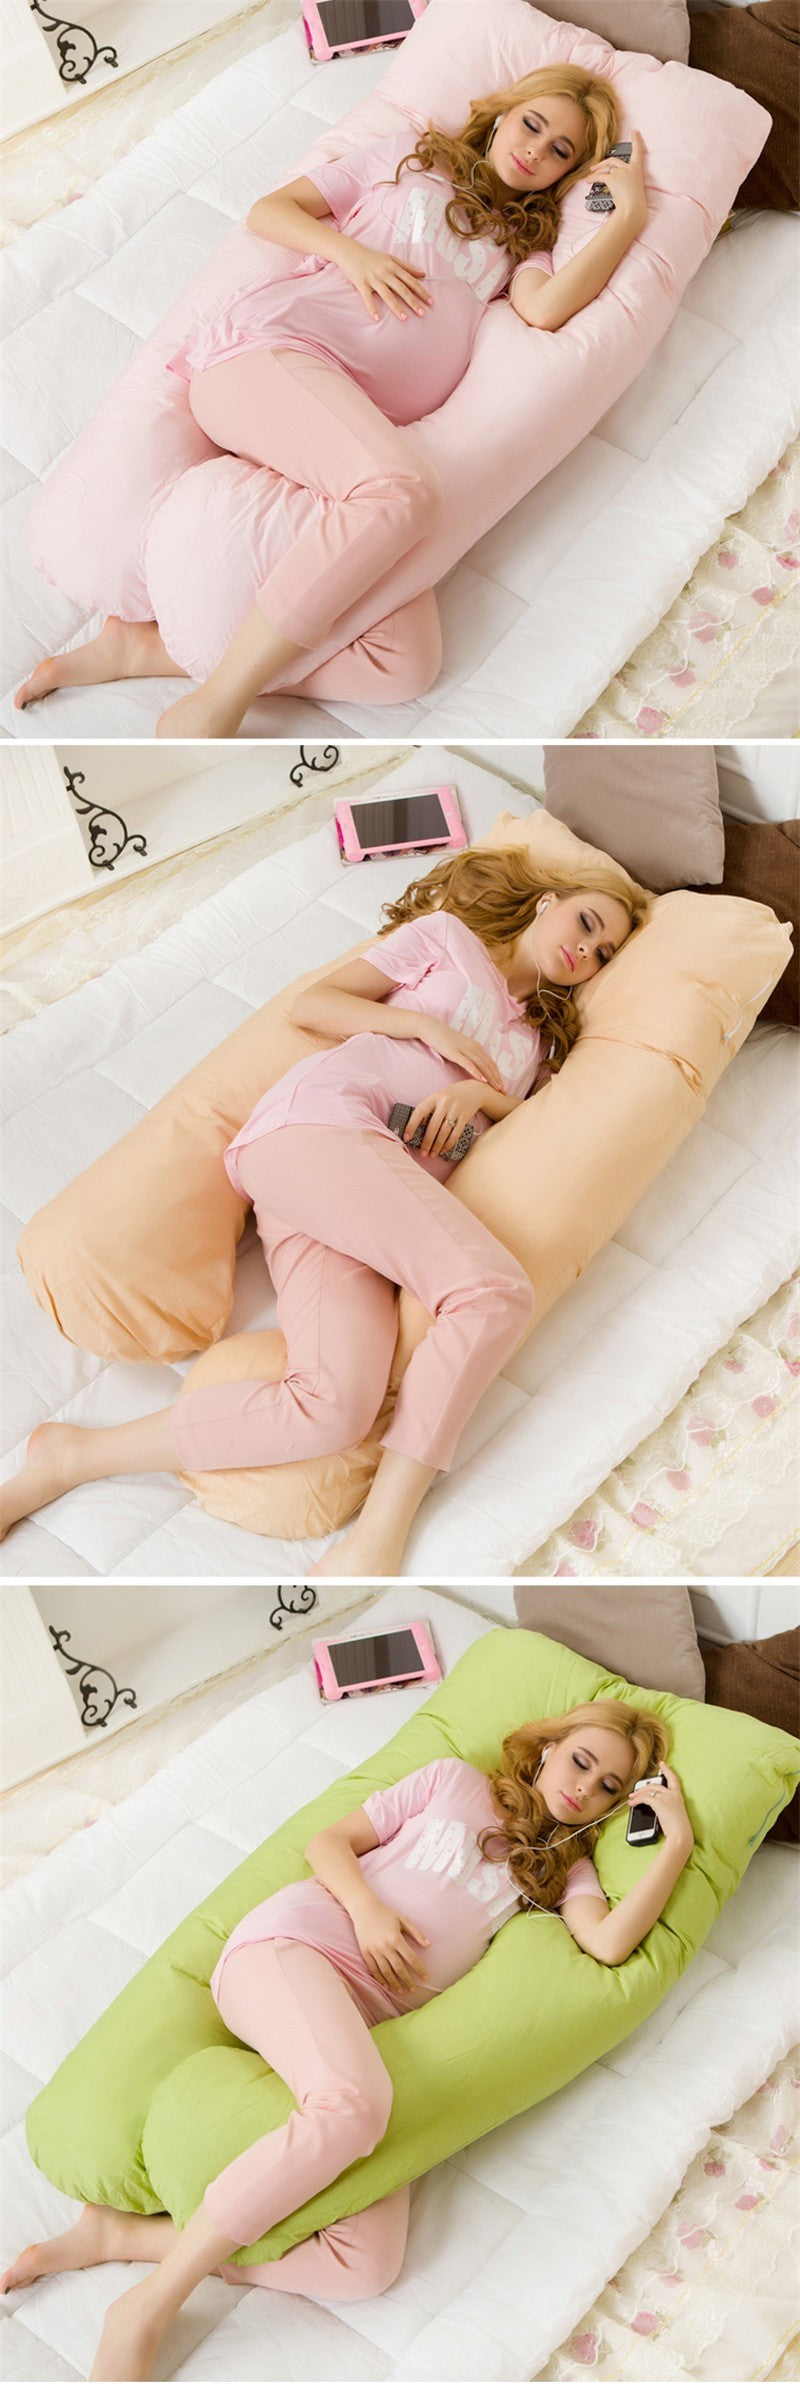 Large Cotton U Shape Pillow For Pregnant Women